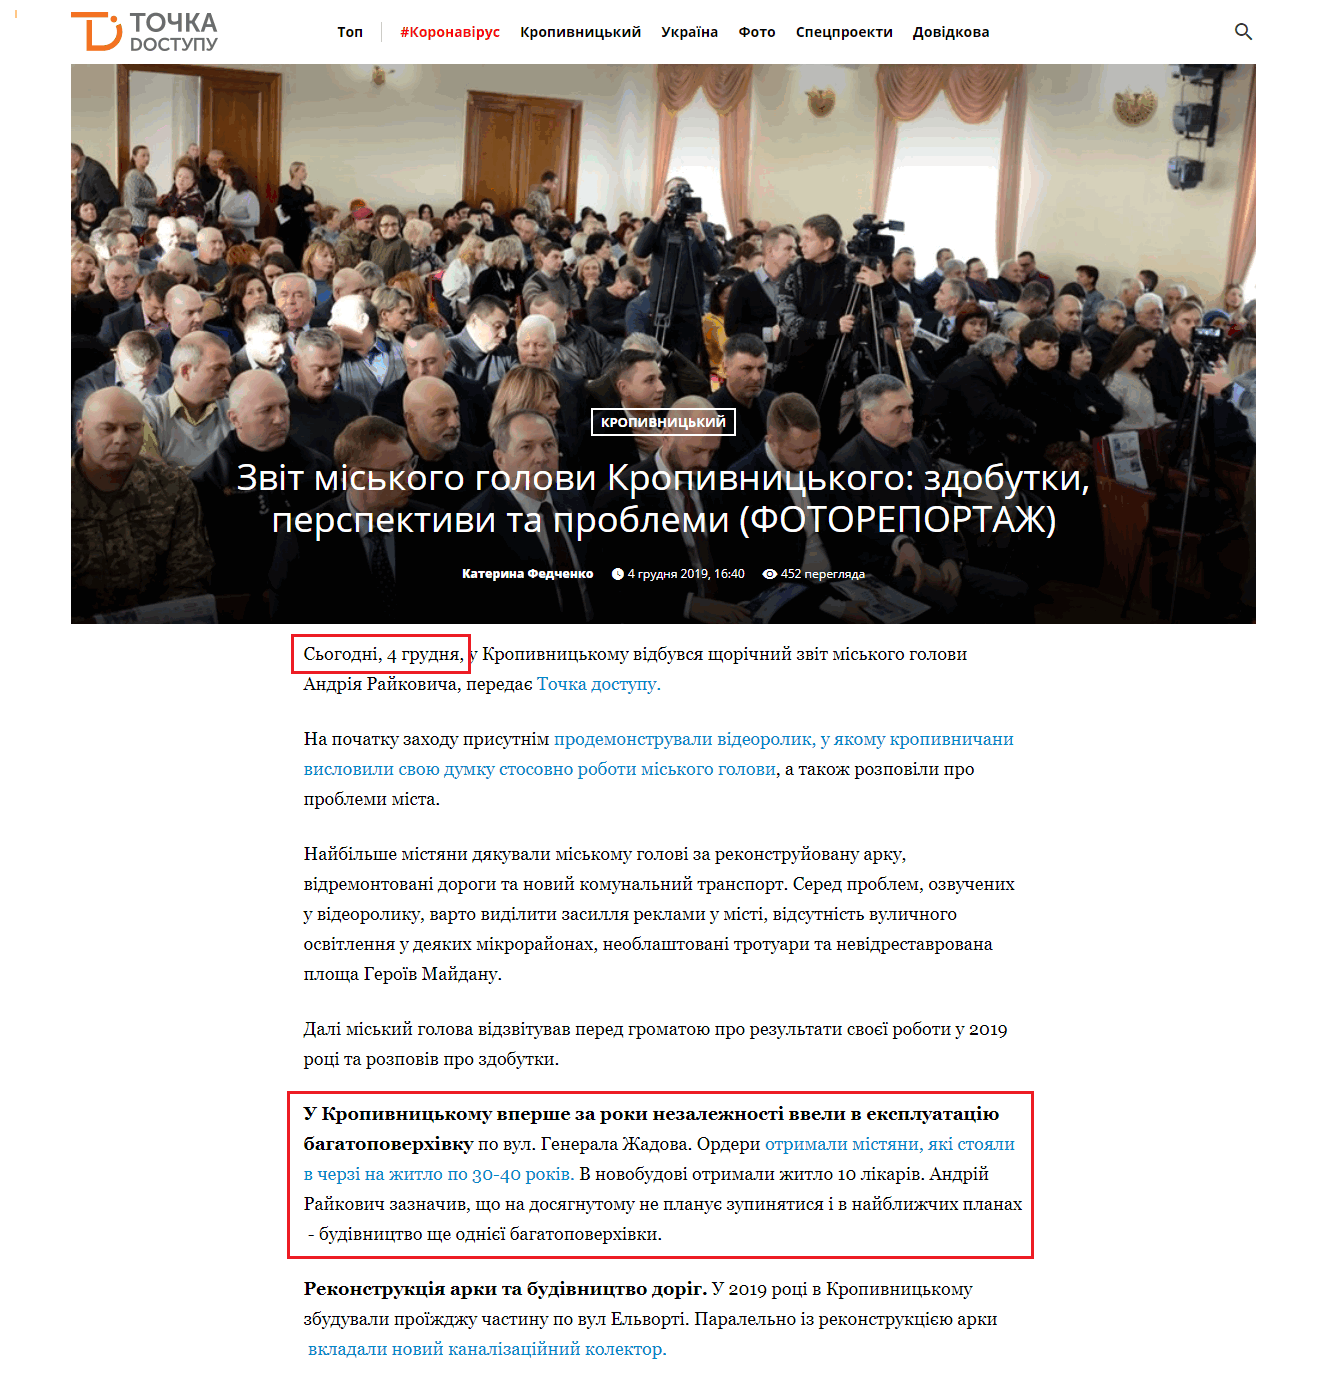 https://dostyp.com.ua/novini/zvit-mis-kogho-gholovi-kropivnits-kogho-zdobutki-pierspiektivi-ta-probliemi-fotorieportazh-2